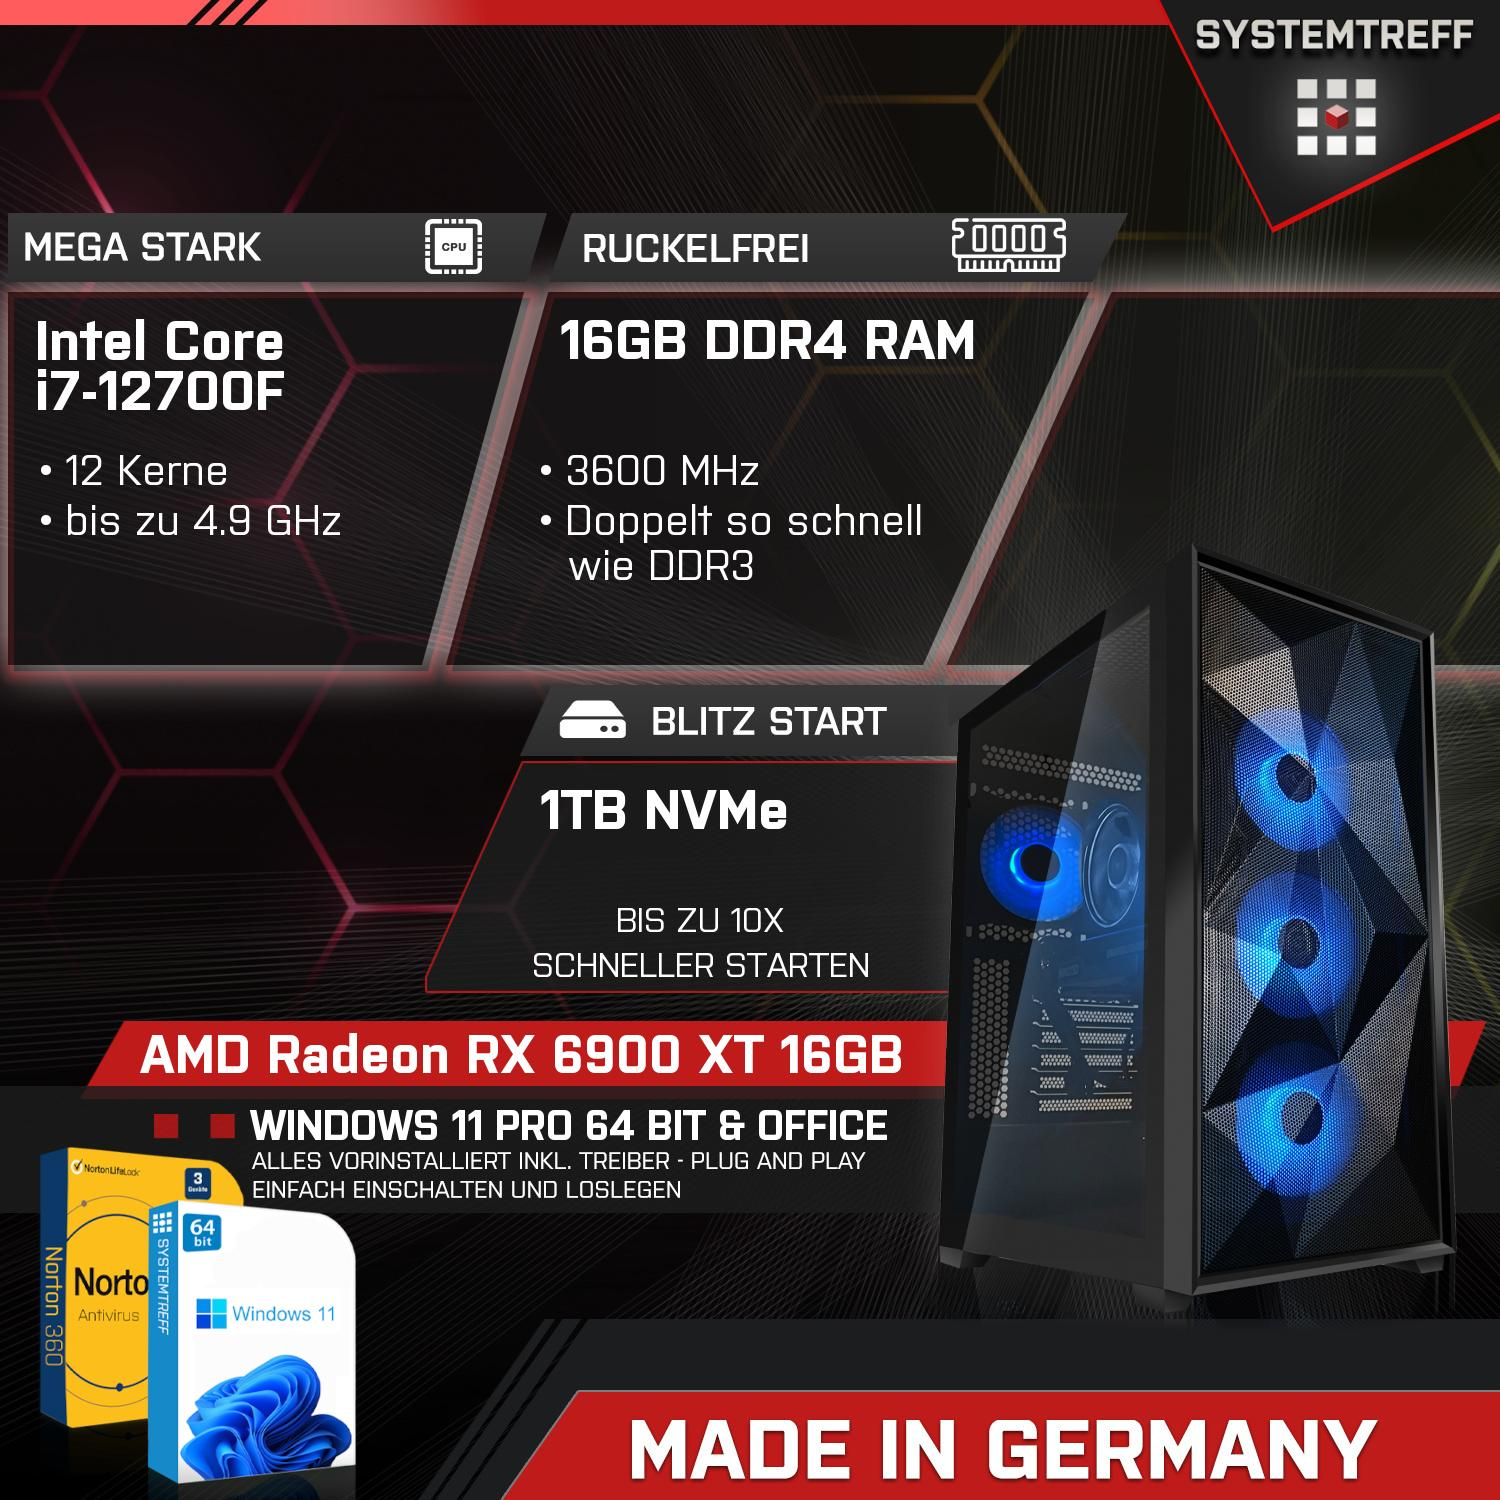 SYSTEMTREFF Gaming Komplett Intel 16 GB Komplett XT GDDR6, 1000 i7-12700F, 6900 PC RX GB Radeon RAM, 16 AMD Core Prozessor, mSSD, GB mit i7-12700F 16GB